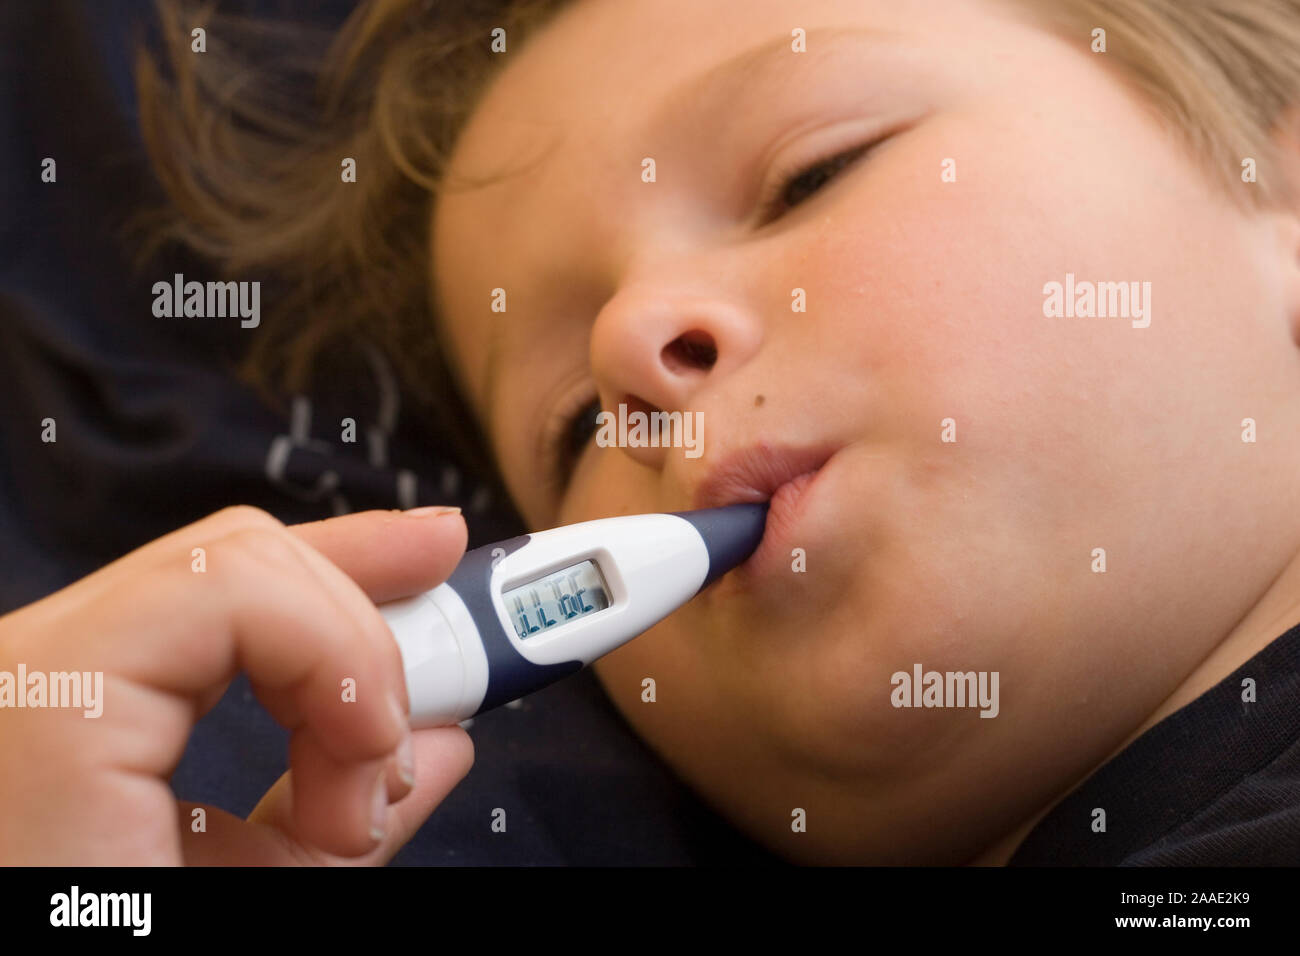 siebenjähriger Junge liegt im Bett mit Fieberthermometer im Mund (MR) Stock Photo